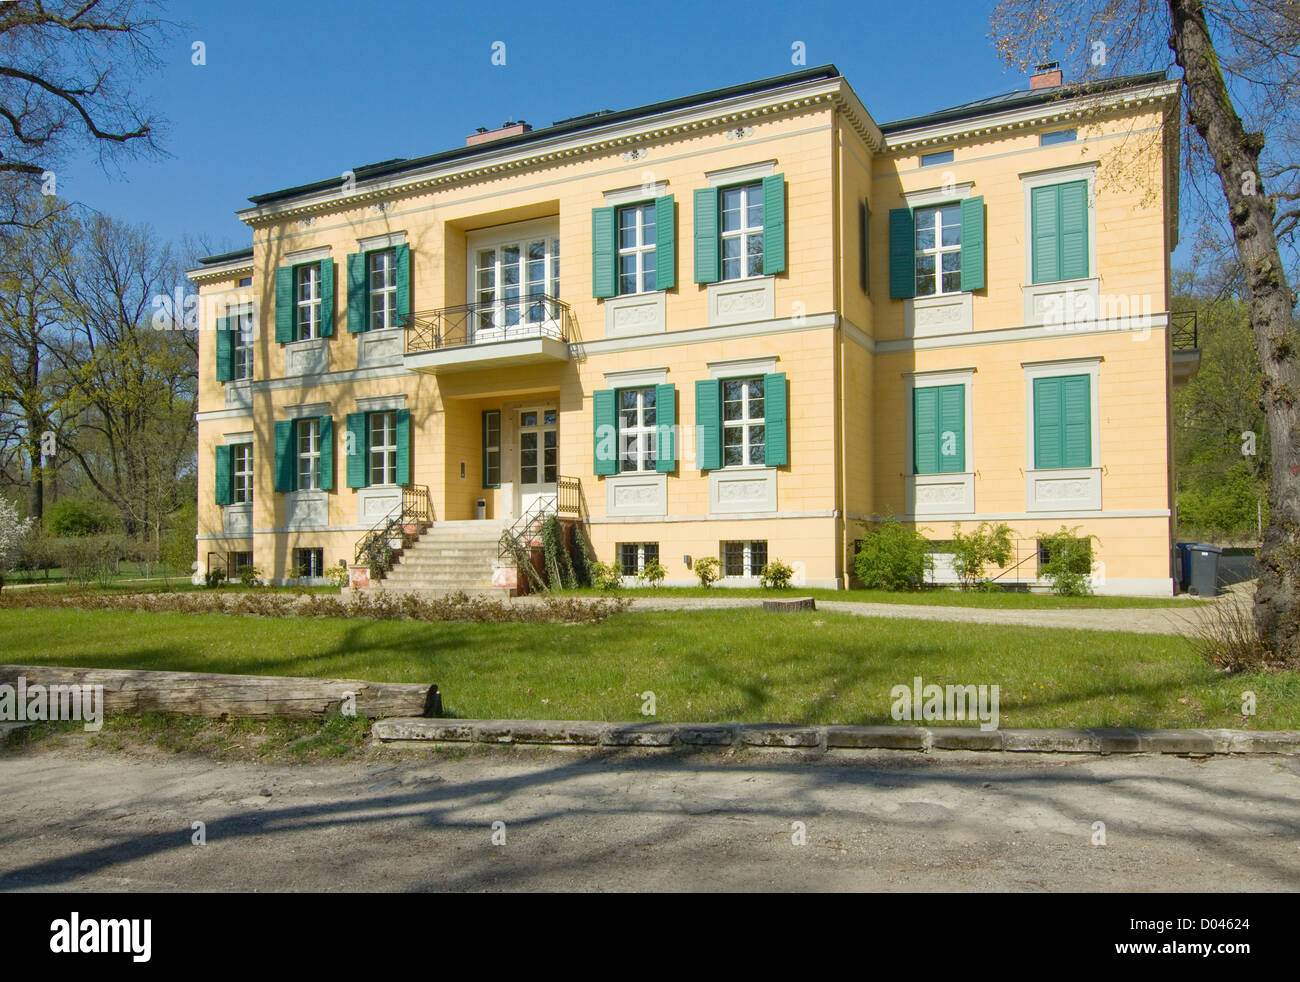 Villa Quandt in Potsdam Stock Photo